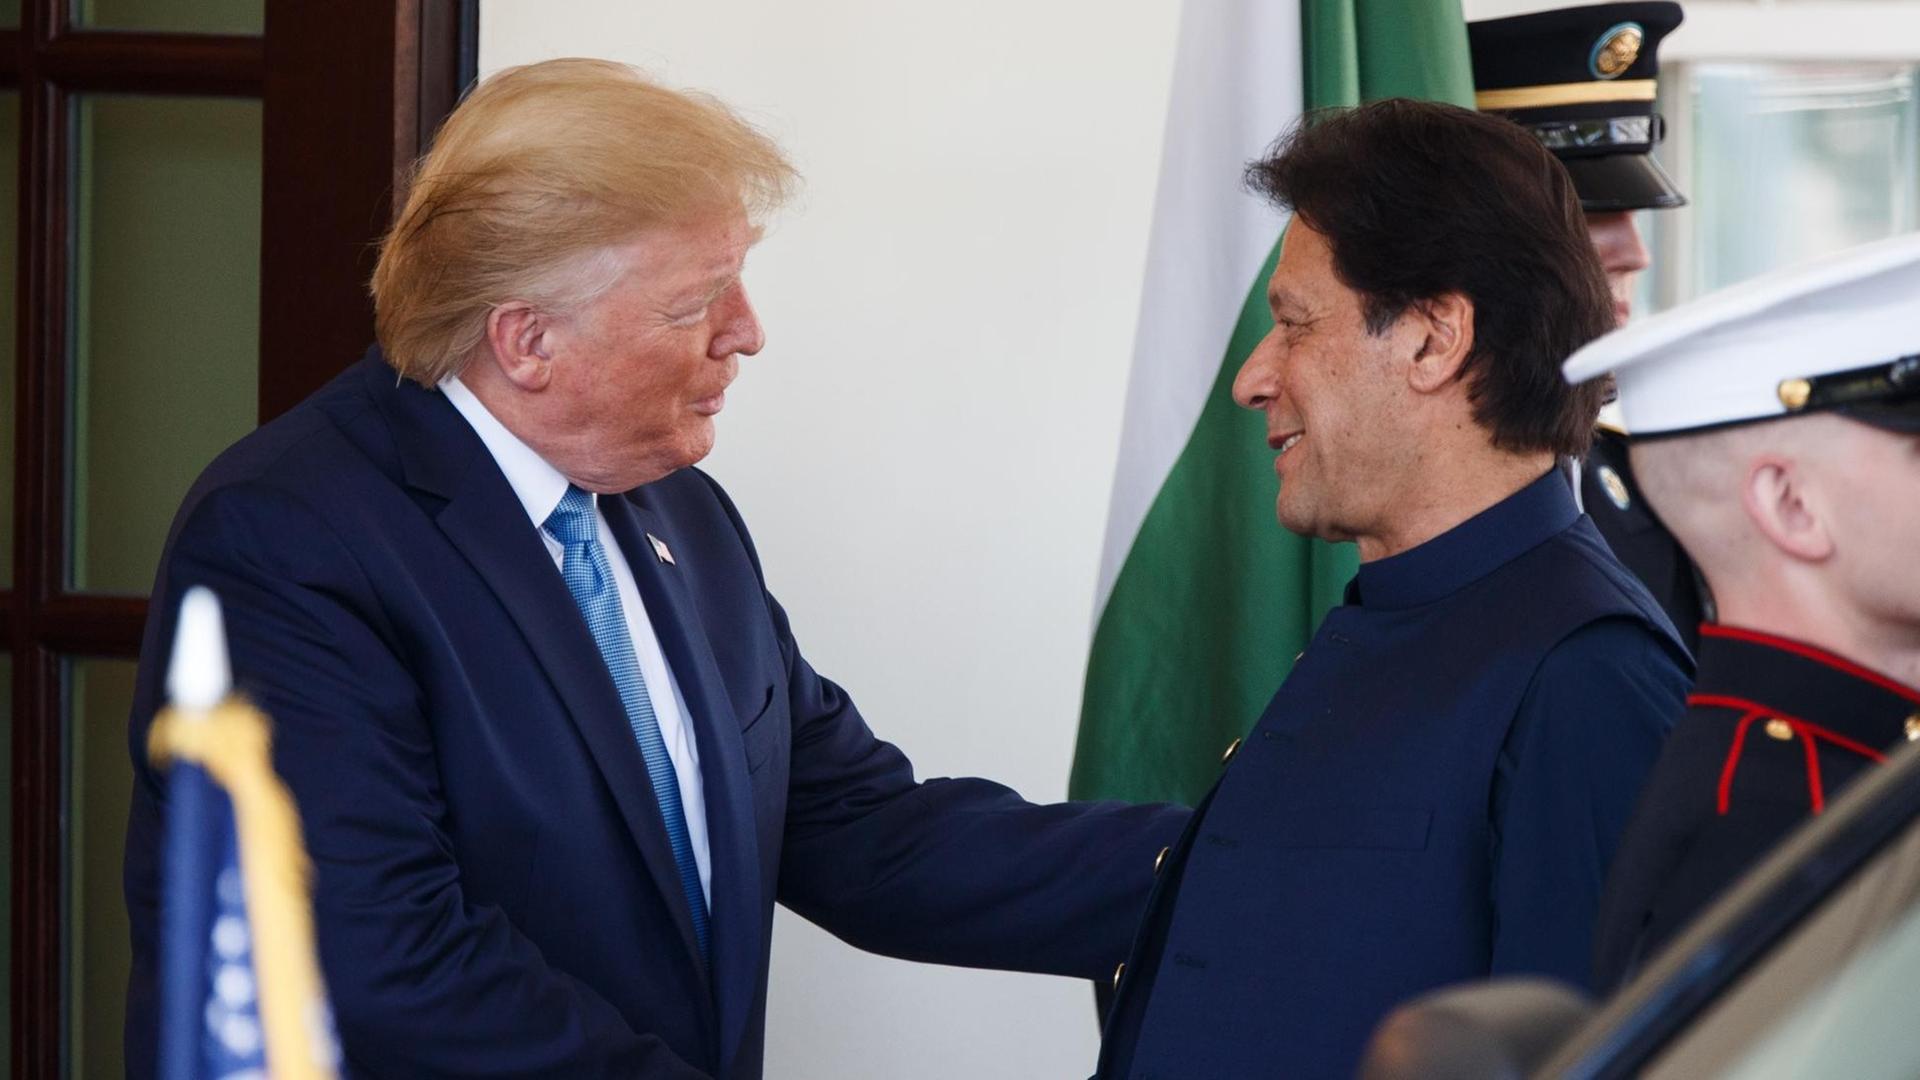 US-Präsident Donald Trump und Pakistans Ministerpräsident Imran Khan stehen vor dem Weißen Haus in Washington D.C. und geben sich die Hand